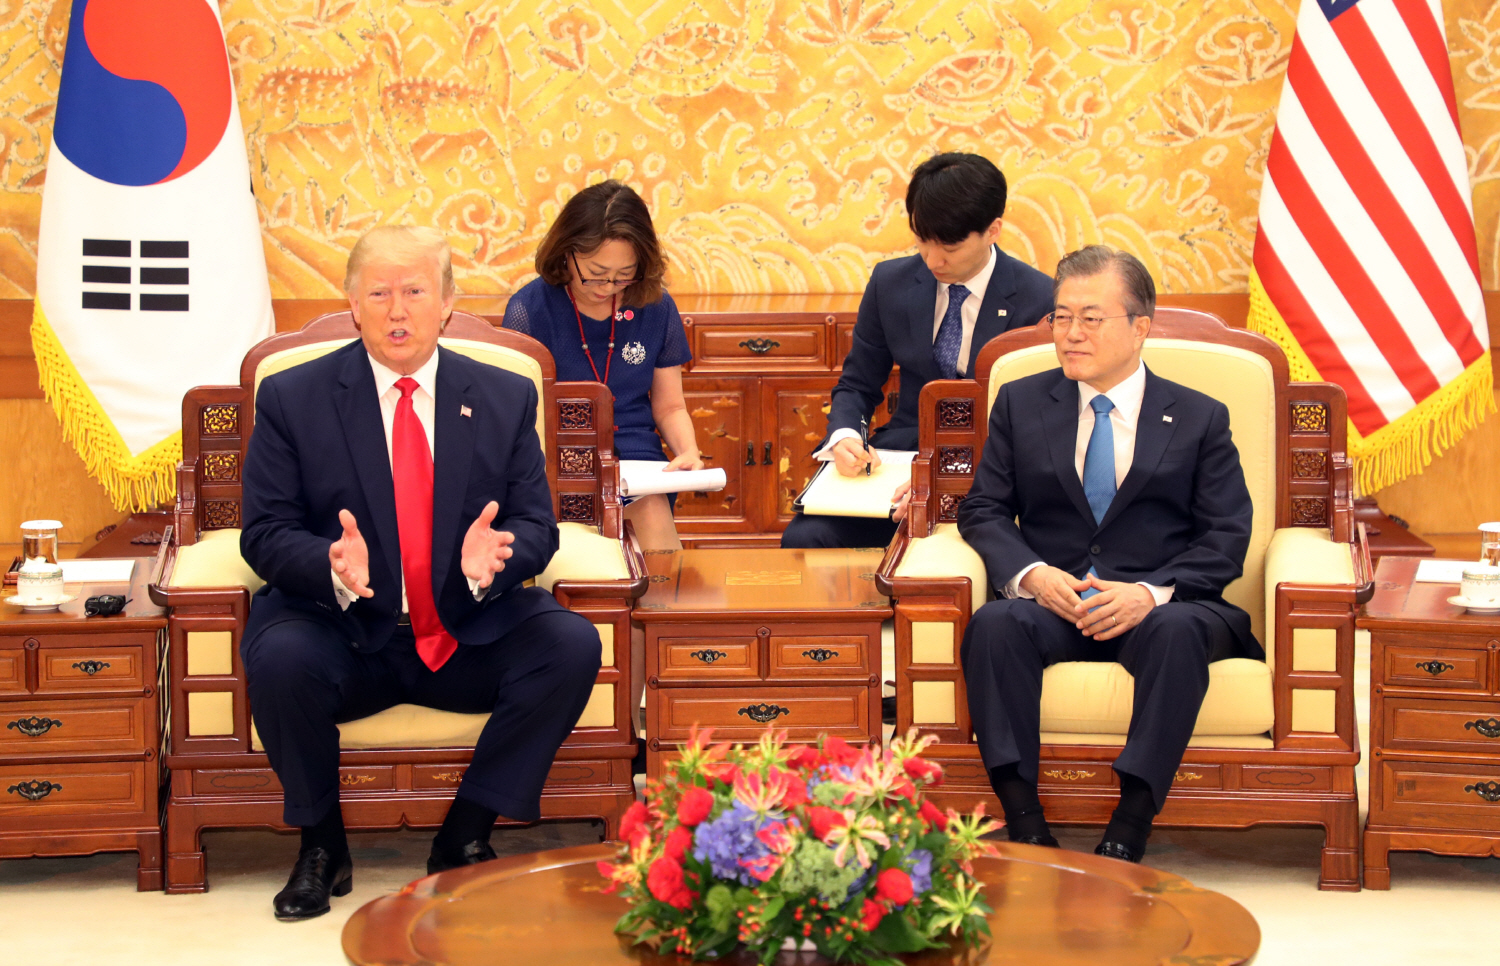 문재인 대통령과 트럼프 미국 대통령이 지난 6월 30일 청와대에서 소인수 정상회담을 하고 있다.